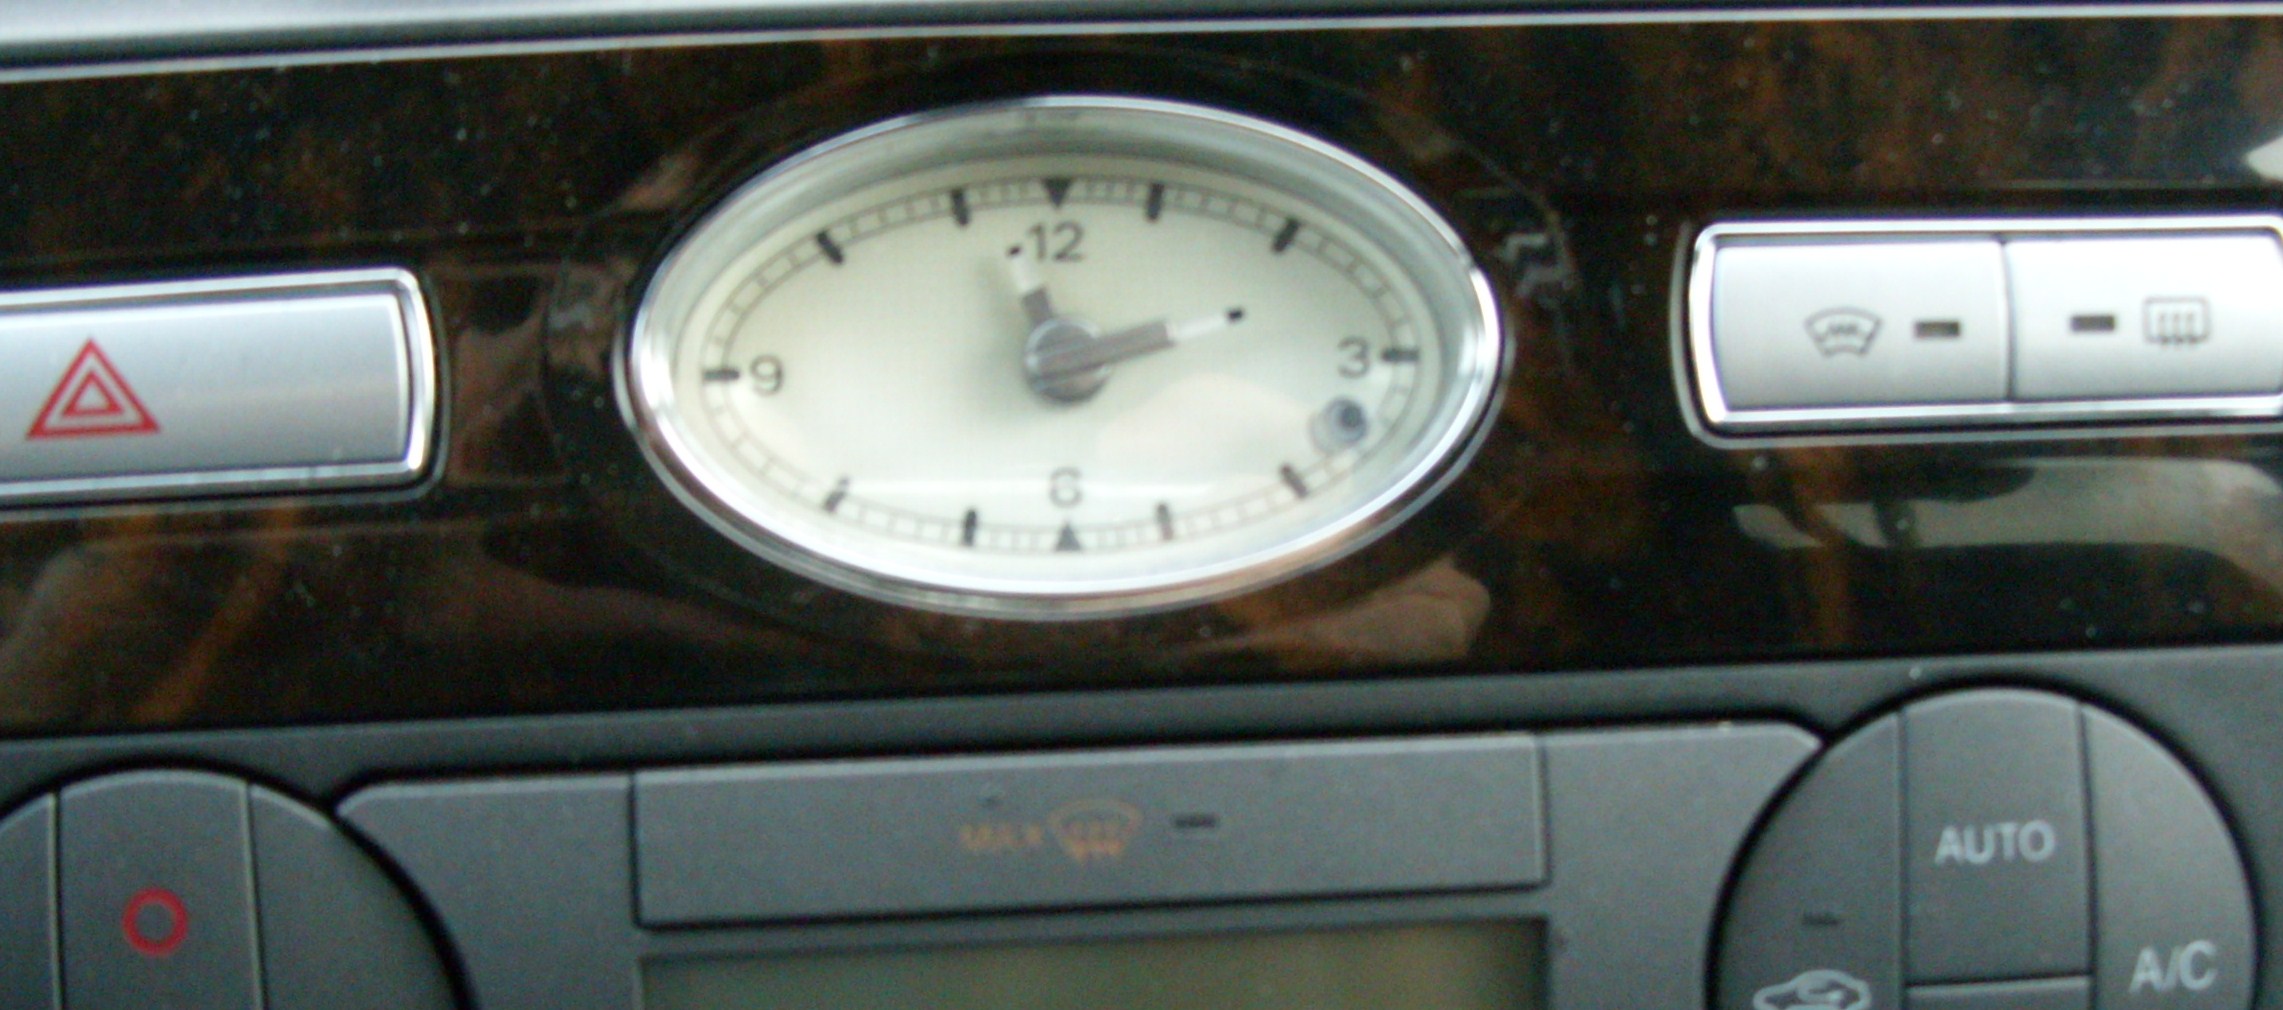 zegarek analogowy Mondeo MK3, spóźnia się ok 3h na dobę